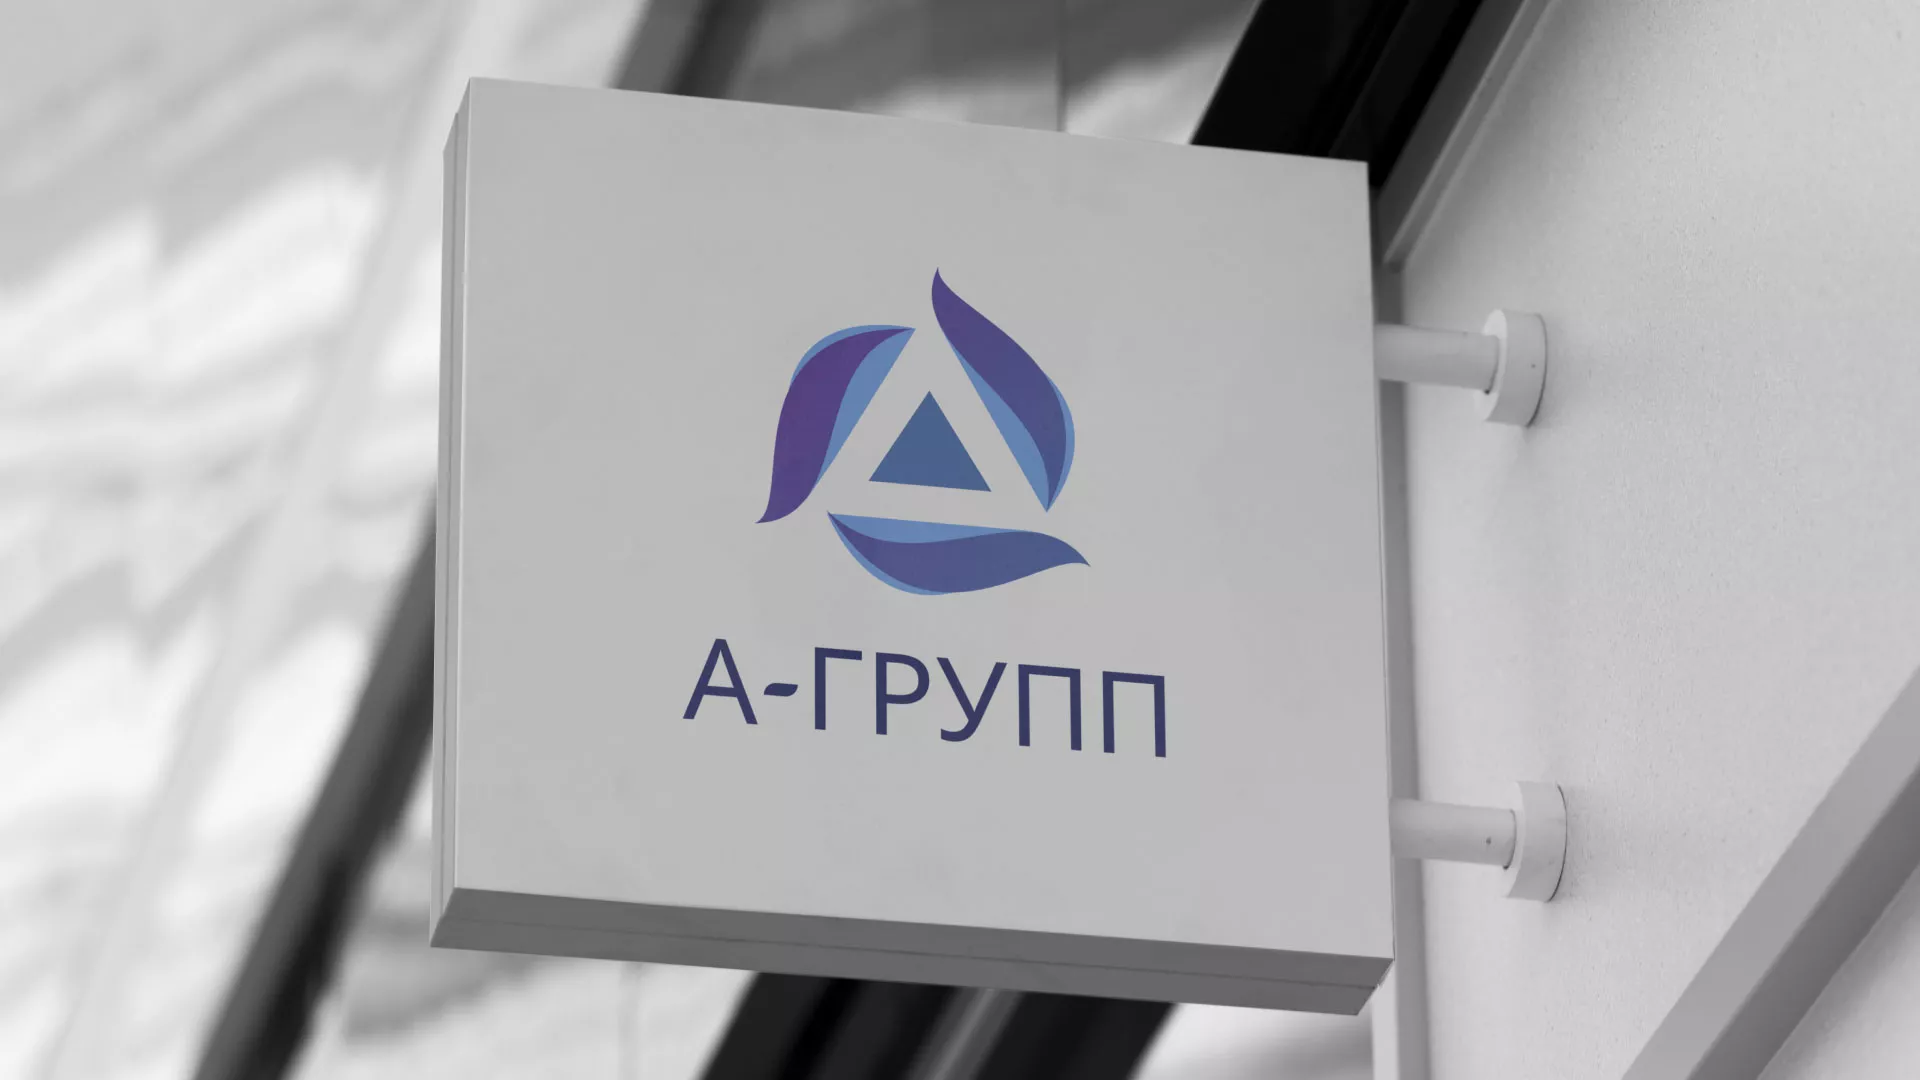 Создание логотипа компании «А-ГРУПП» в Орехово-Зуево